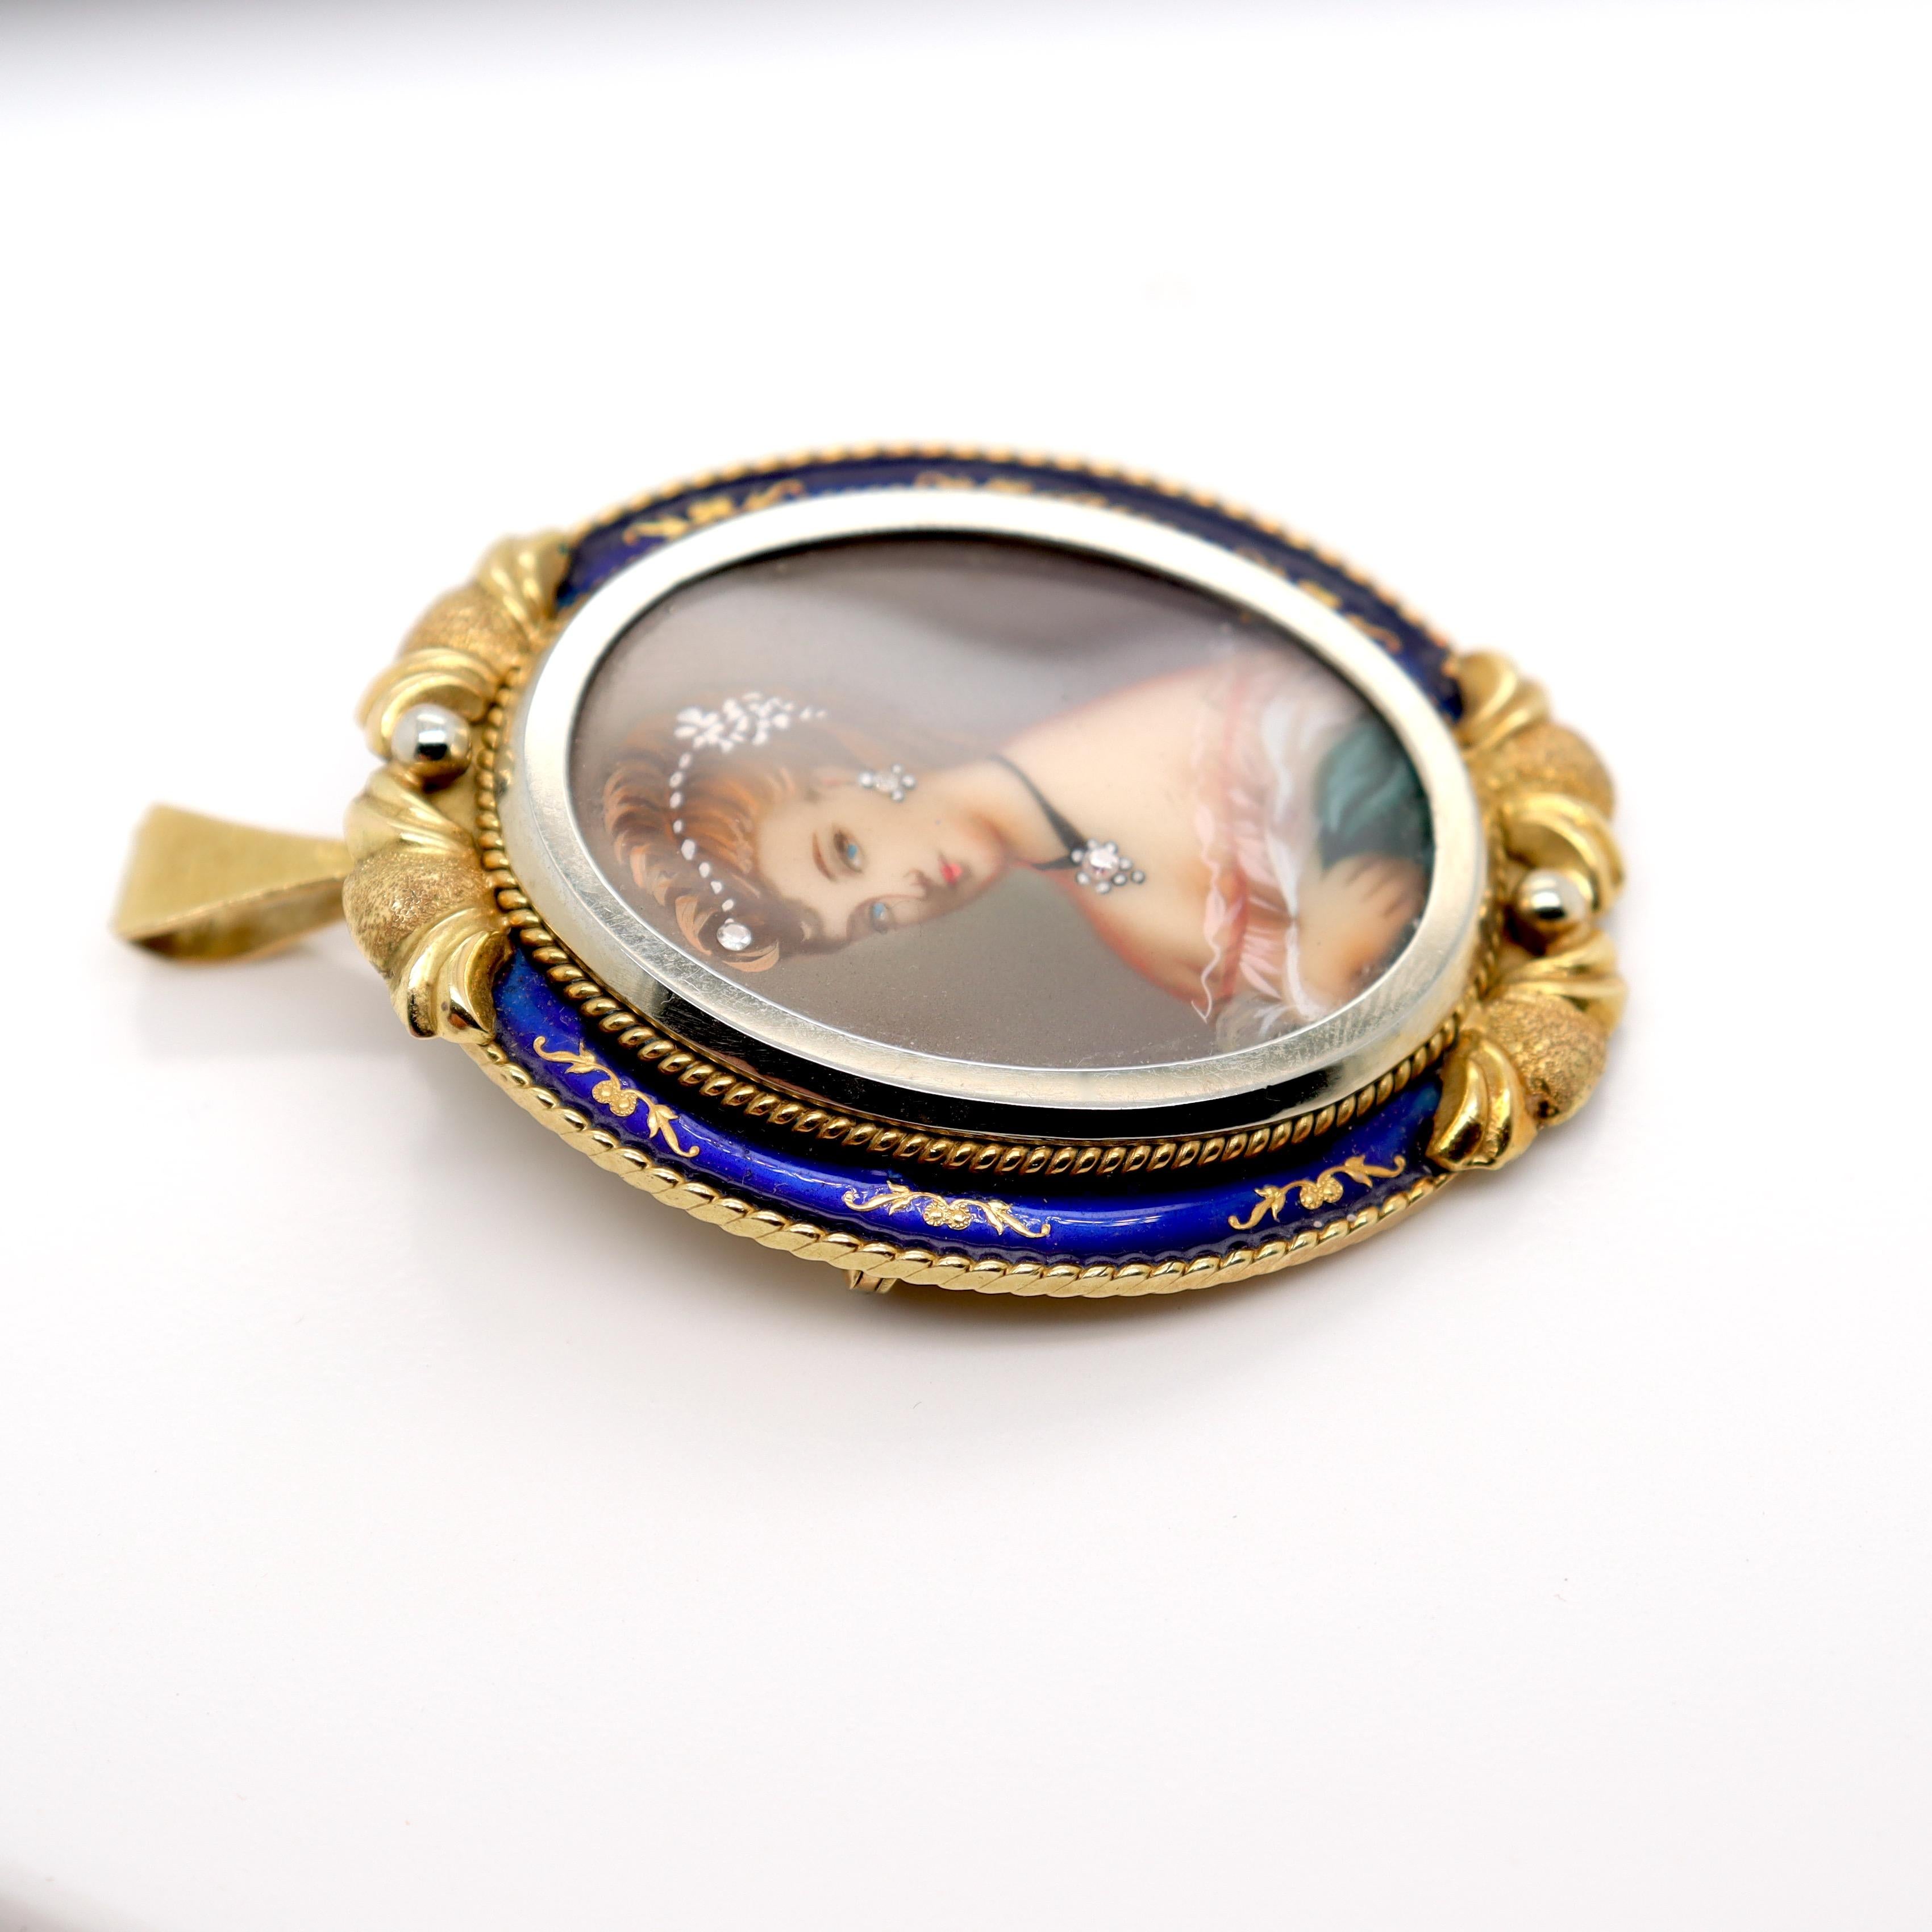 Vintage Corletto 18K Gold & Blue Enamel Portrait Miniature Brooch or Pendant For Sale 4